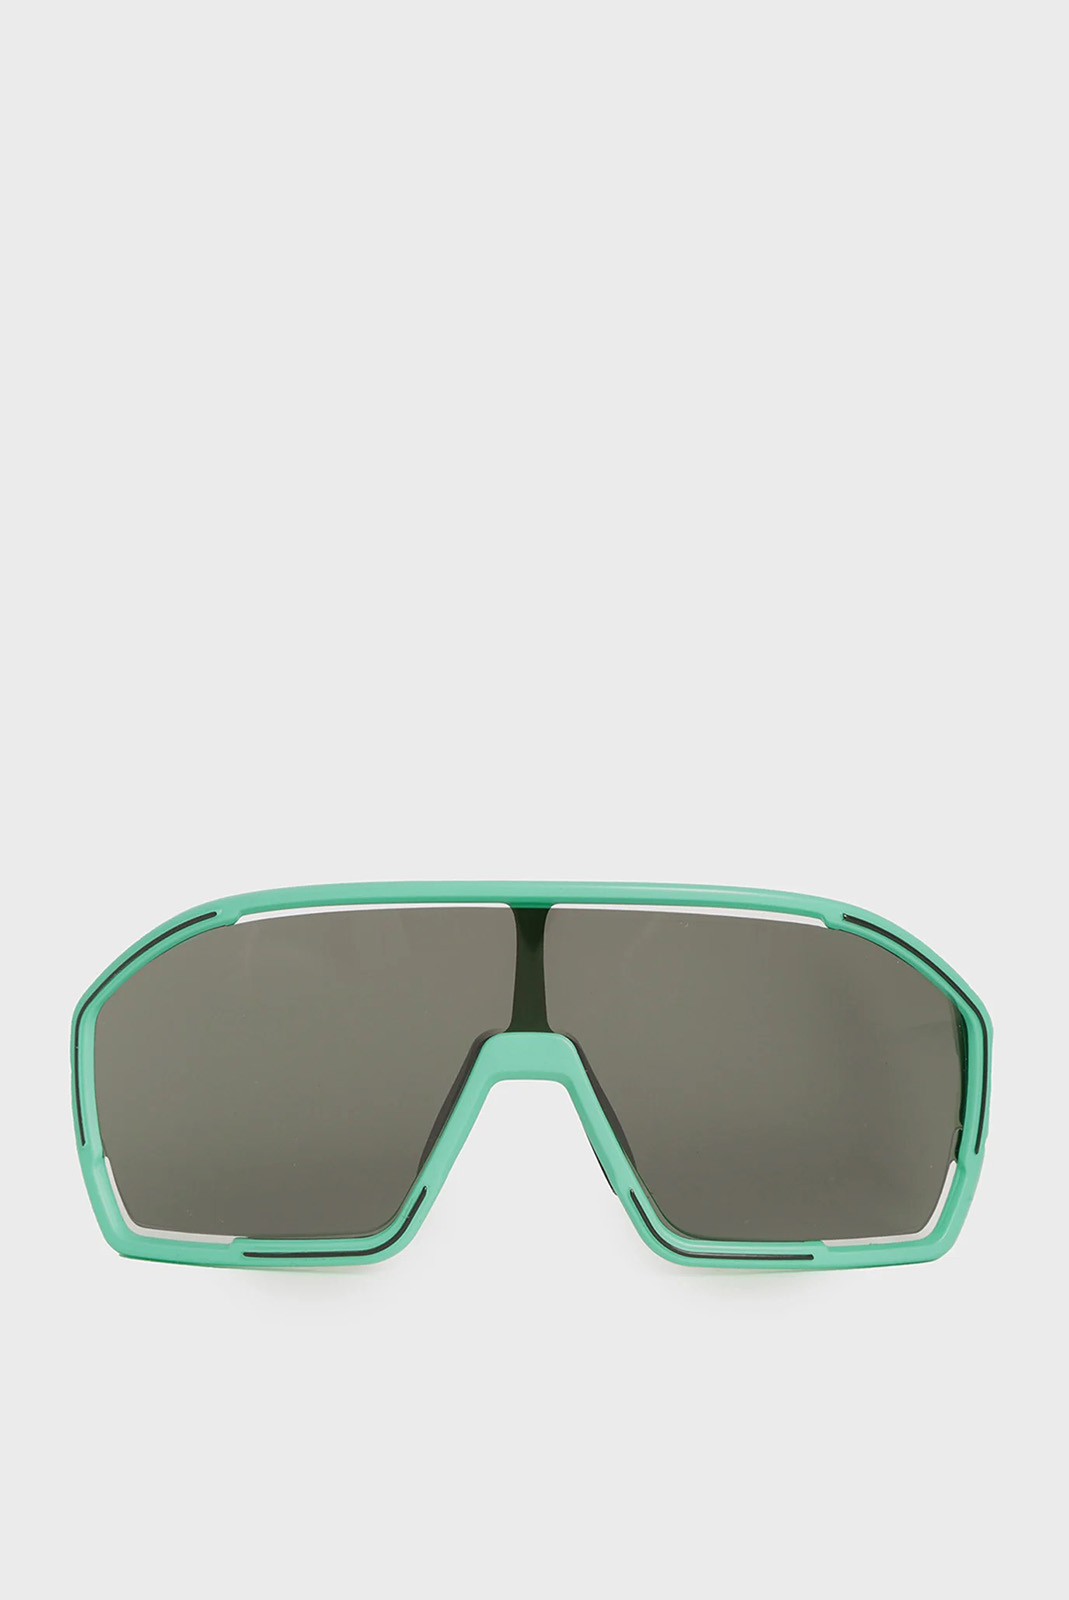 Сонцезахисні окуляри Alpina BONFIRE A8687-71